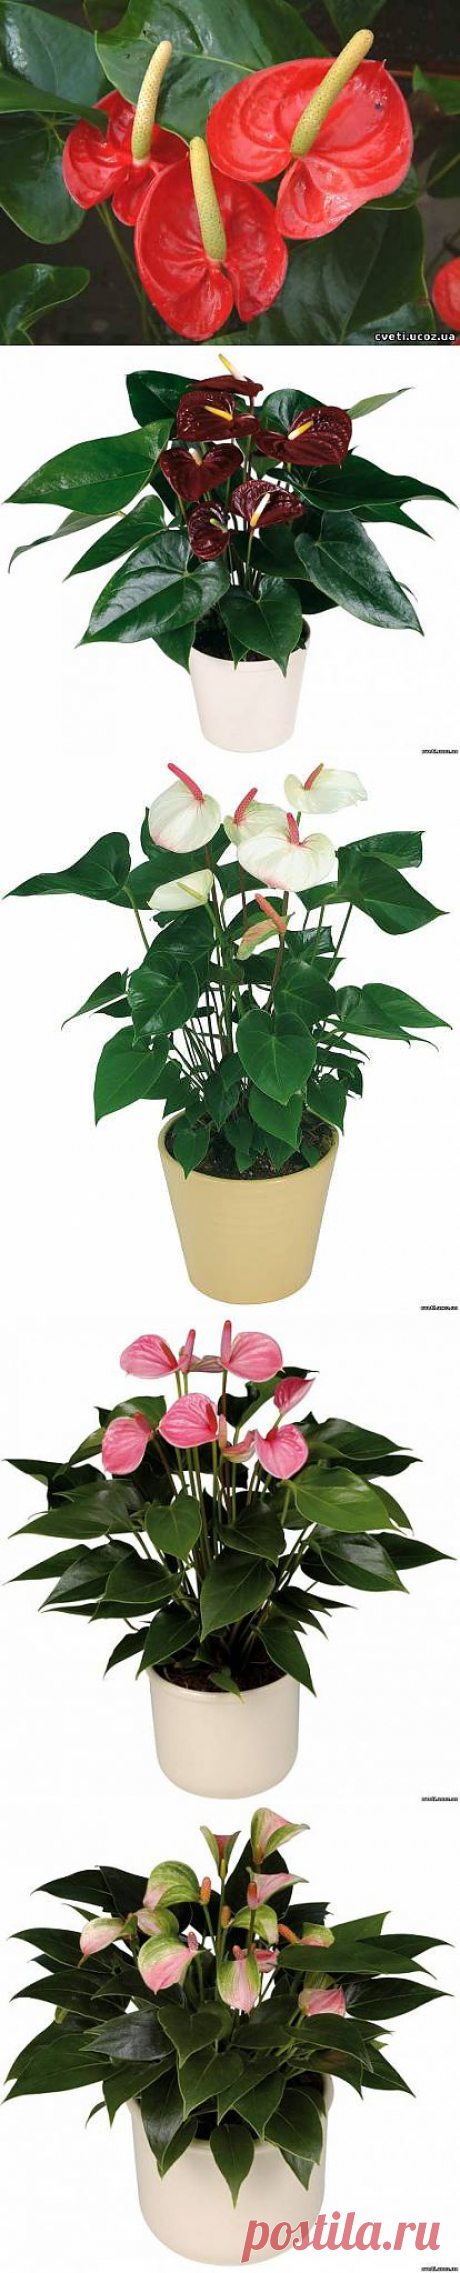 Антуриум (Anthurium). Уход. Размножение - Антуриум - Комнатные цветы и растения - Каталог статей - Цветы и растения